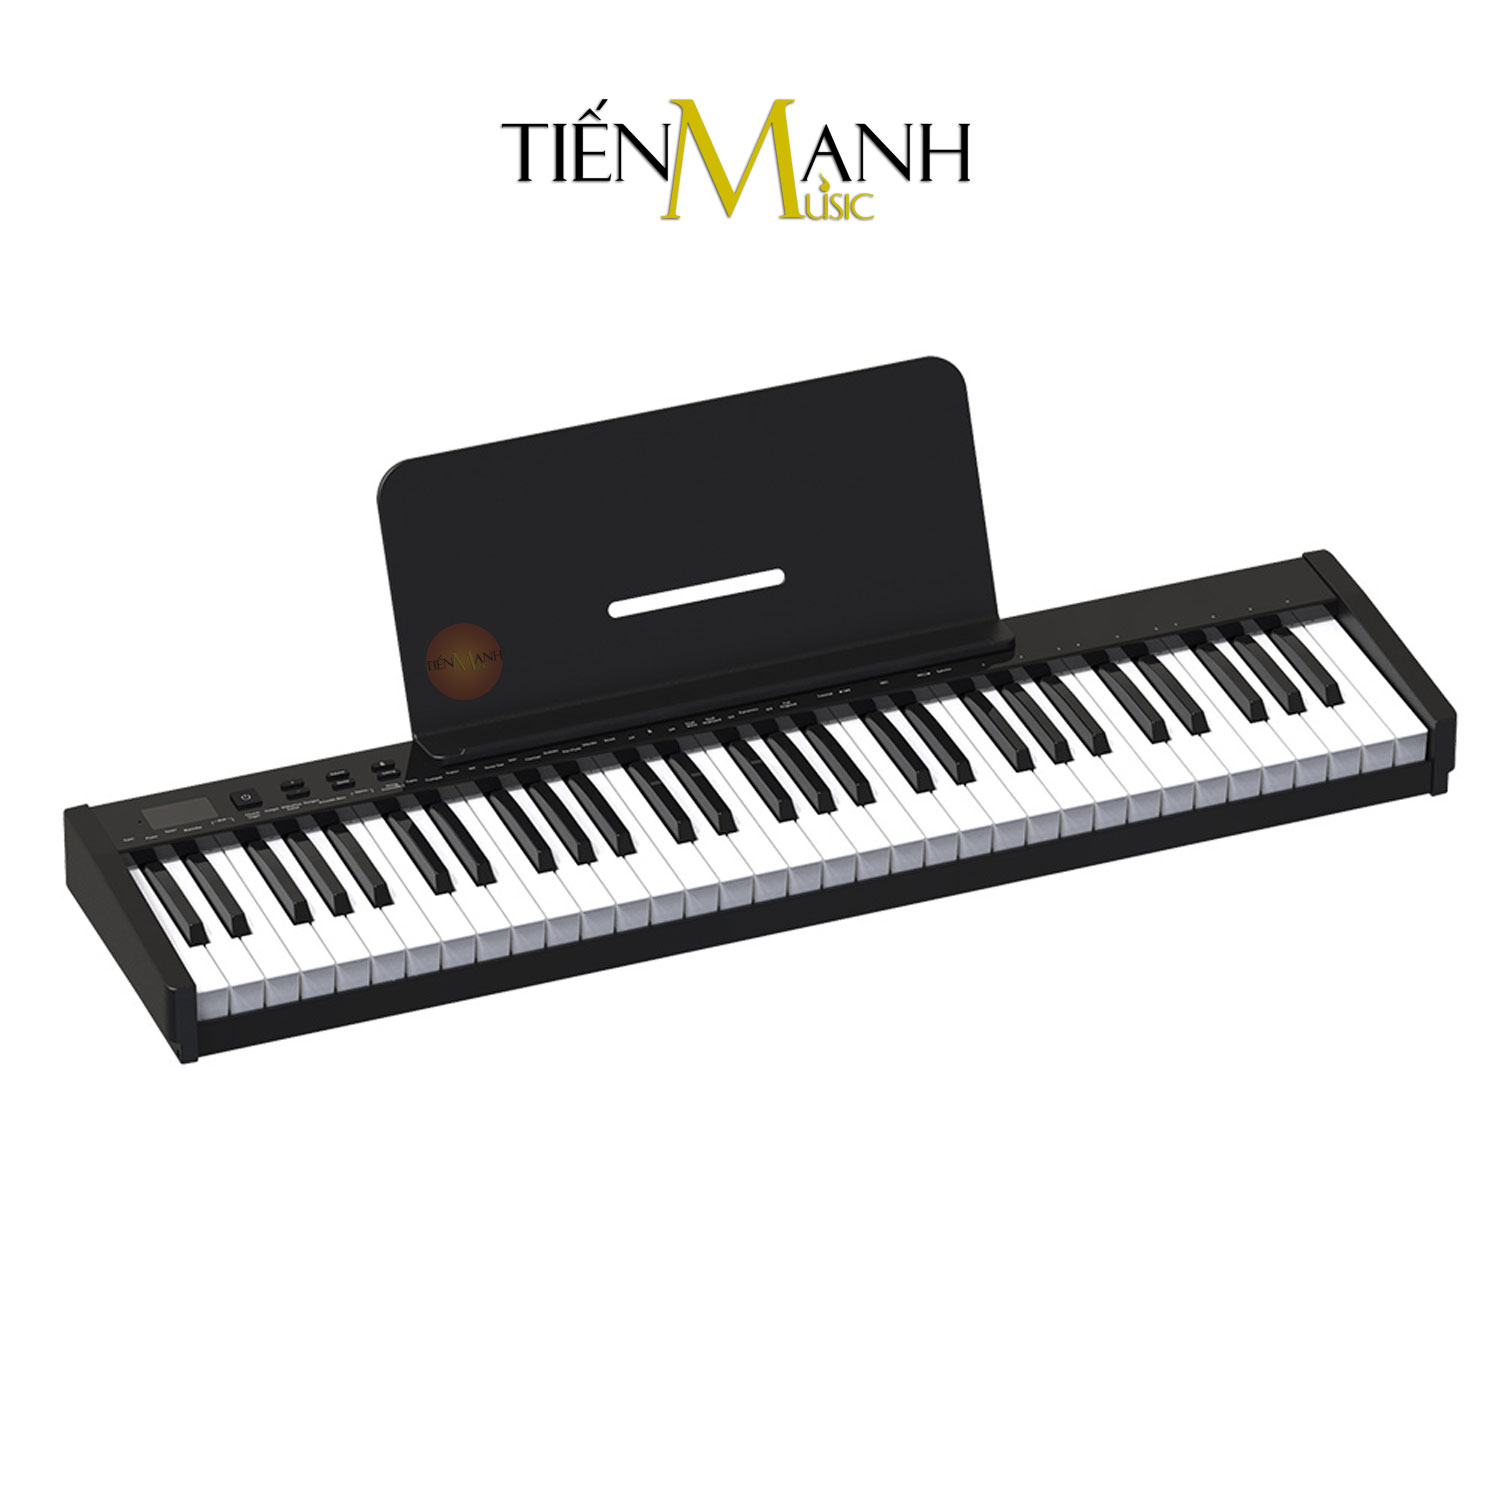 [Mẫu Mới, Cao Cấp] Đàn Piano Điện Konix PH61S - 61 Phím Nặng Cảm Ứng Lực PH61 Có 2 Loa Lớn Và Midi Keyboard Hàng Chính Hãng